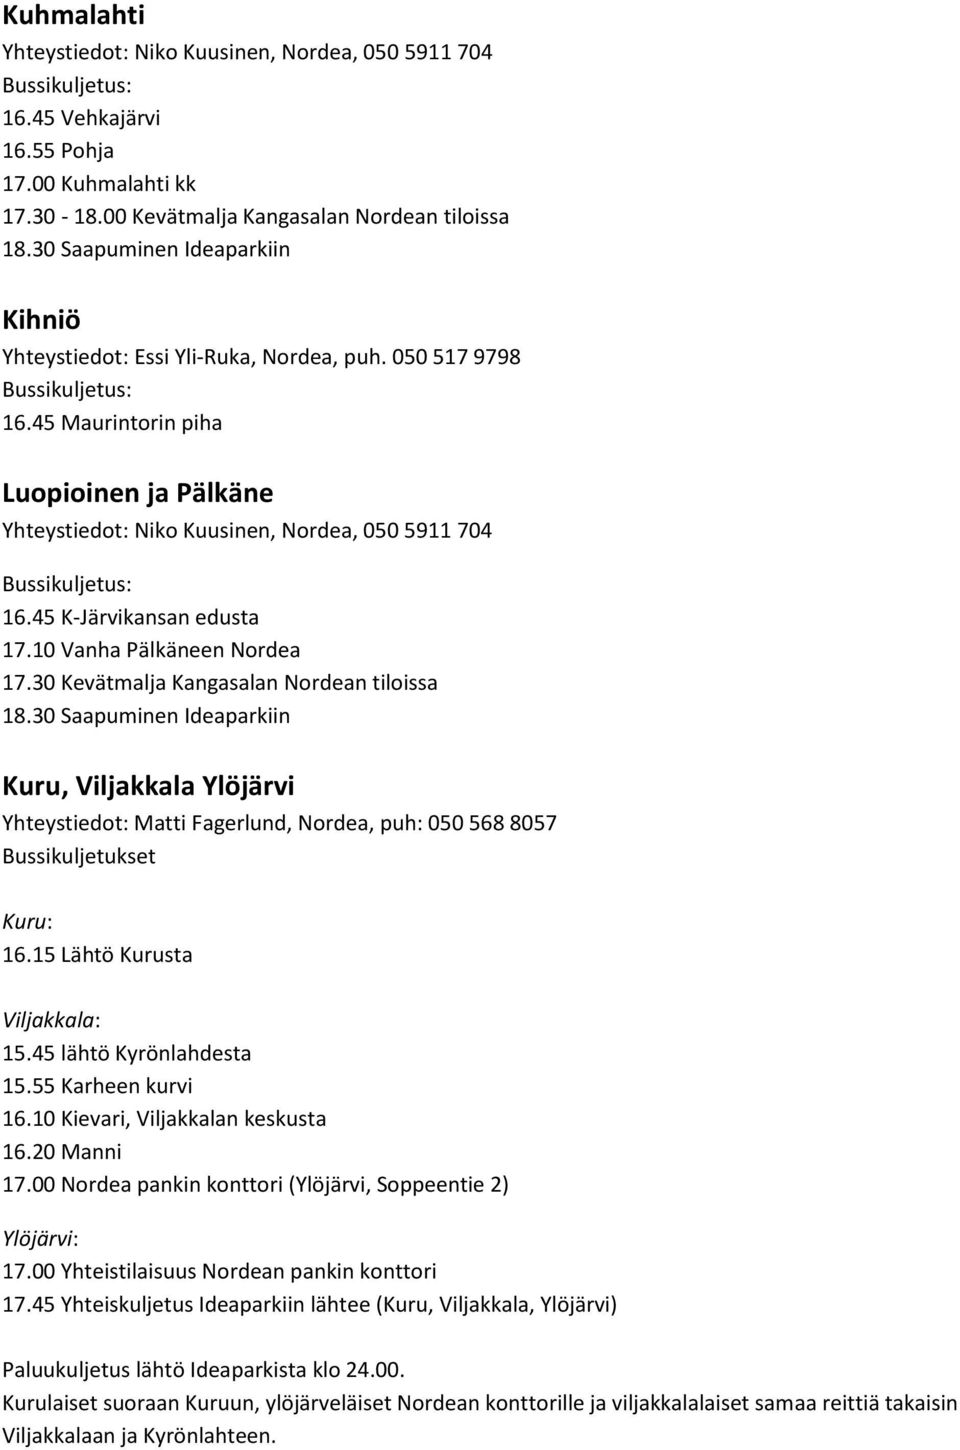 45 Maurintorin piha Luopioinen ja Pälkäne Yhteystiedot: Niko Kuusinen, Nordea, 050 5911 704 16.45 K-Järvikansan edusta 17.10 Vanha Pälkäneen Nordea 17.